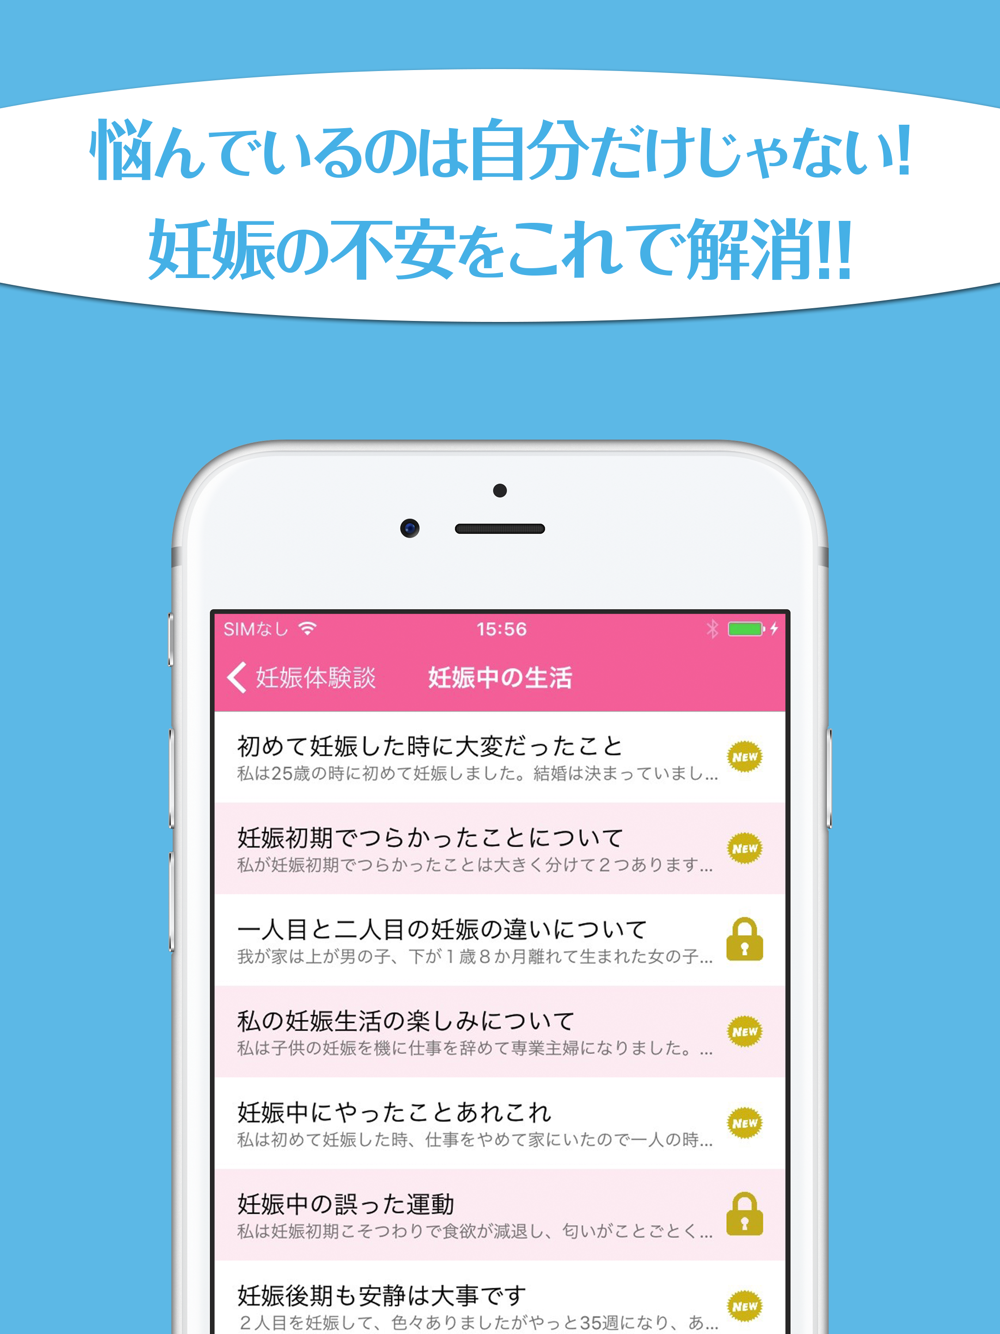 経験者が語る妊娠体験談 先輩ママたちのエピソード集 Free Download App For Iphone Steprimo Com